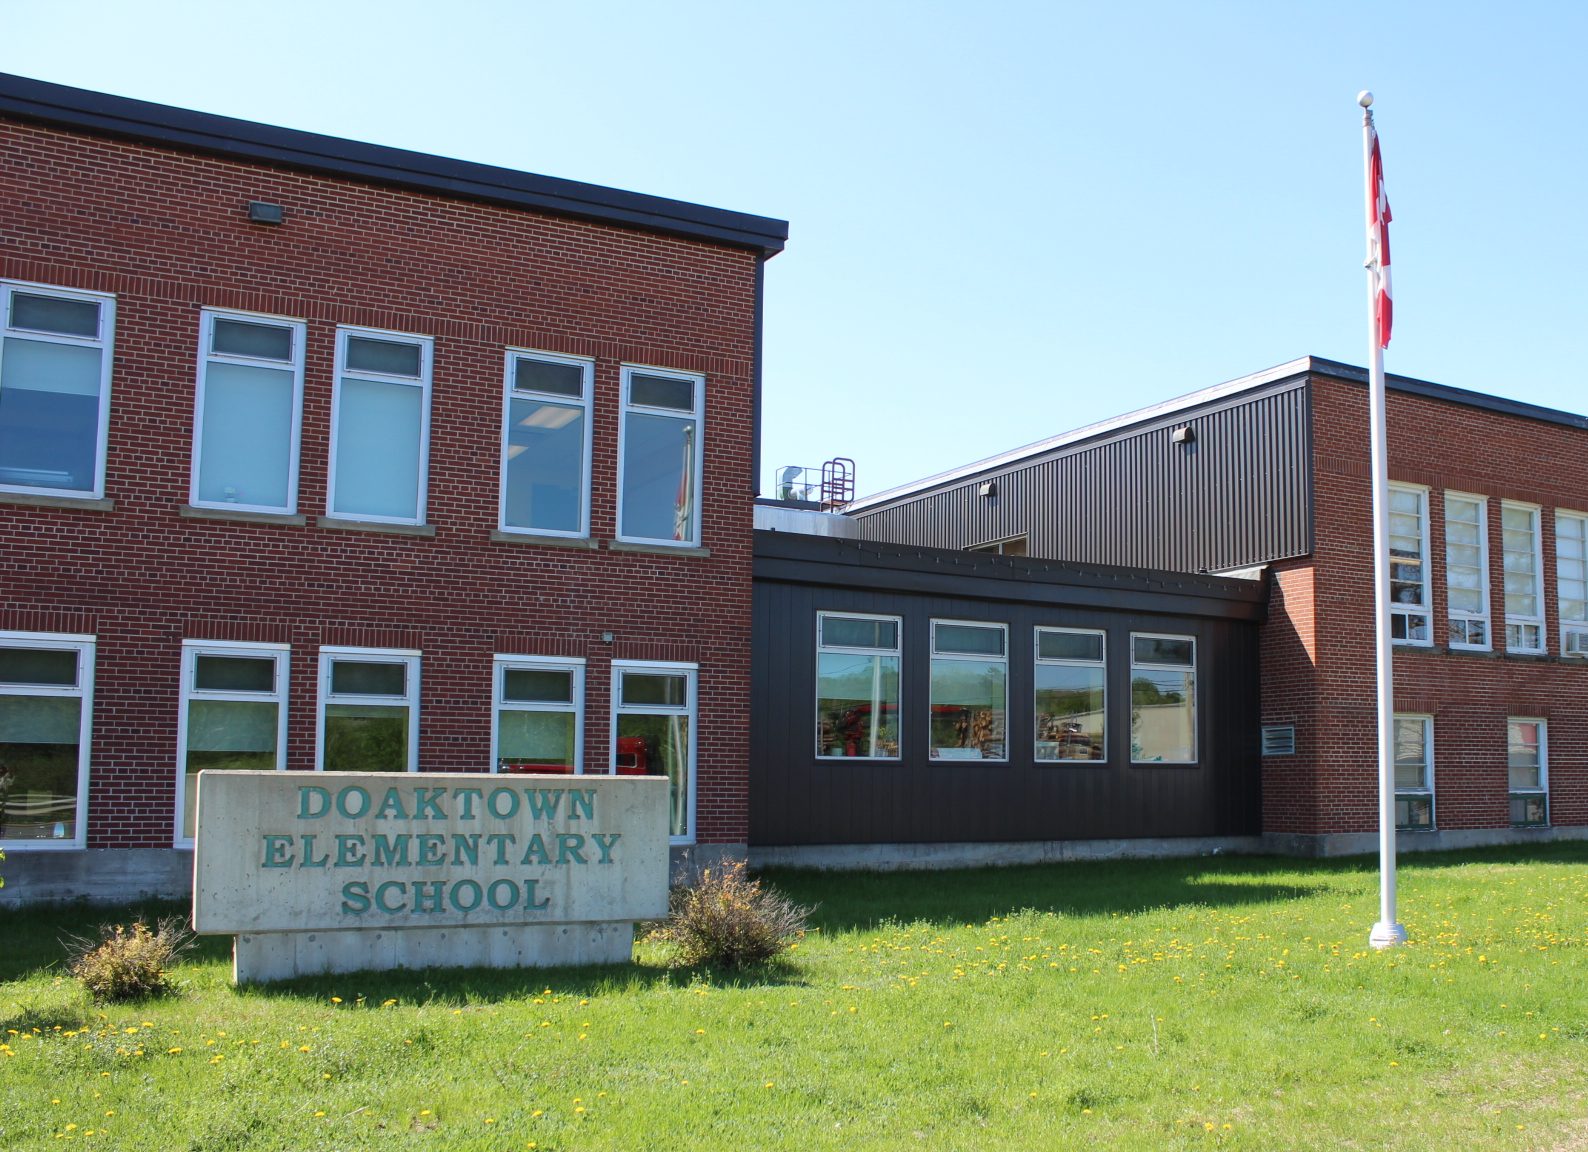 Doaktown Elementary School. Doaktown, NB.